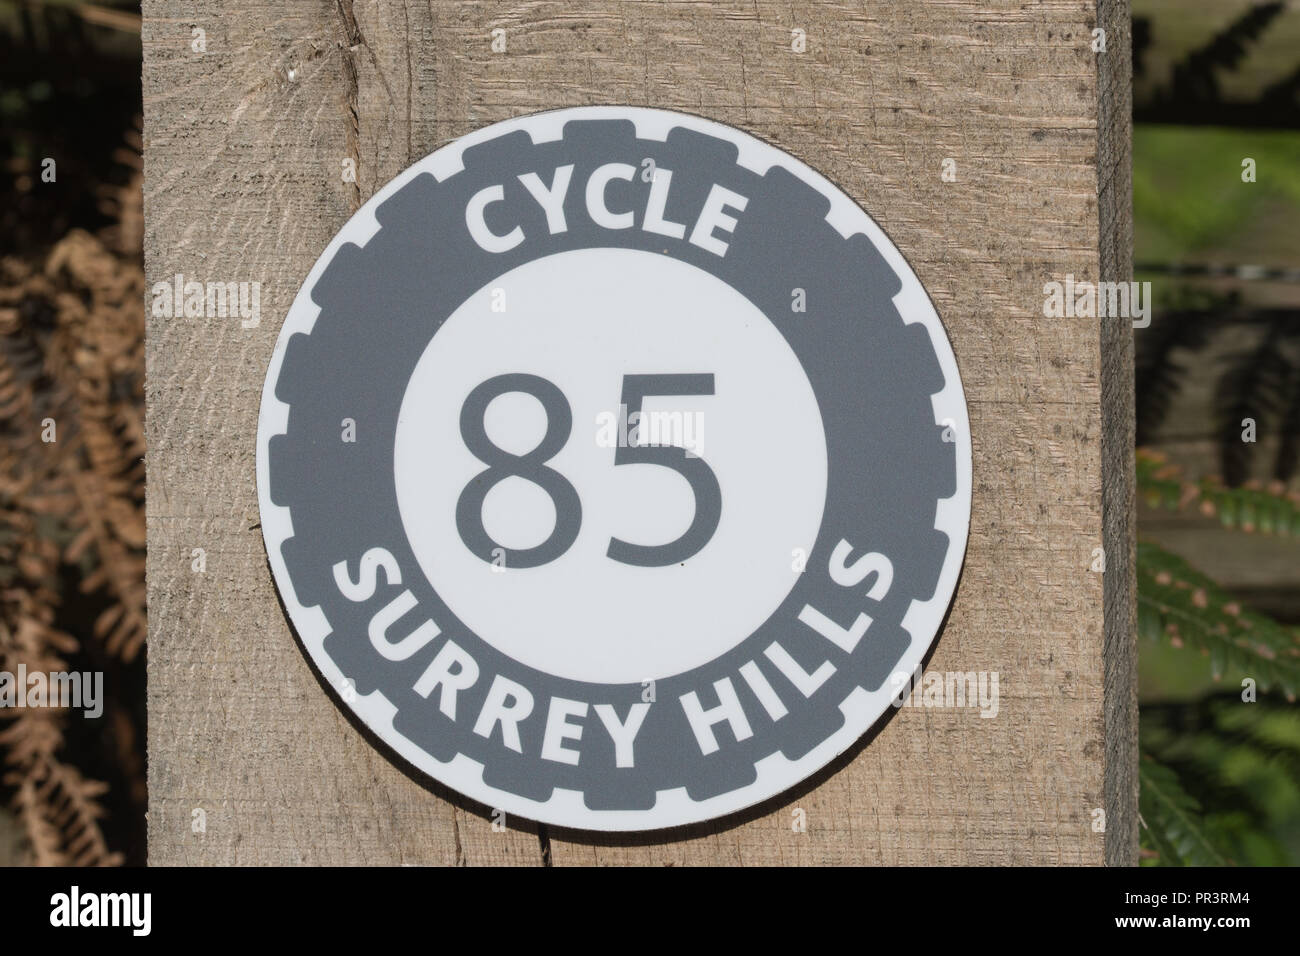 Post Marker für den Zyklus Surrey Hills Gebiet von außergewöhnlicher natürlicher Schönheit Radweg oder Weg (Markierung Nr. 85) am Gemeinsamen Hankley, Surrey, Großbritannien. Stockfoto